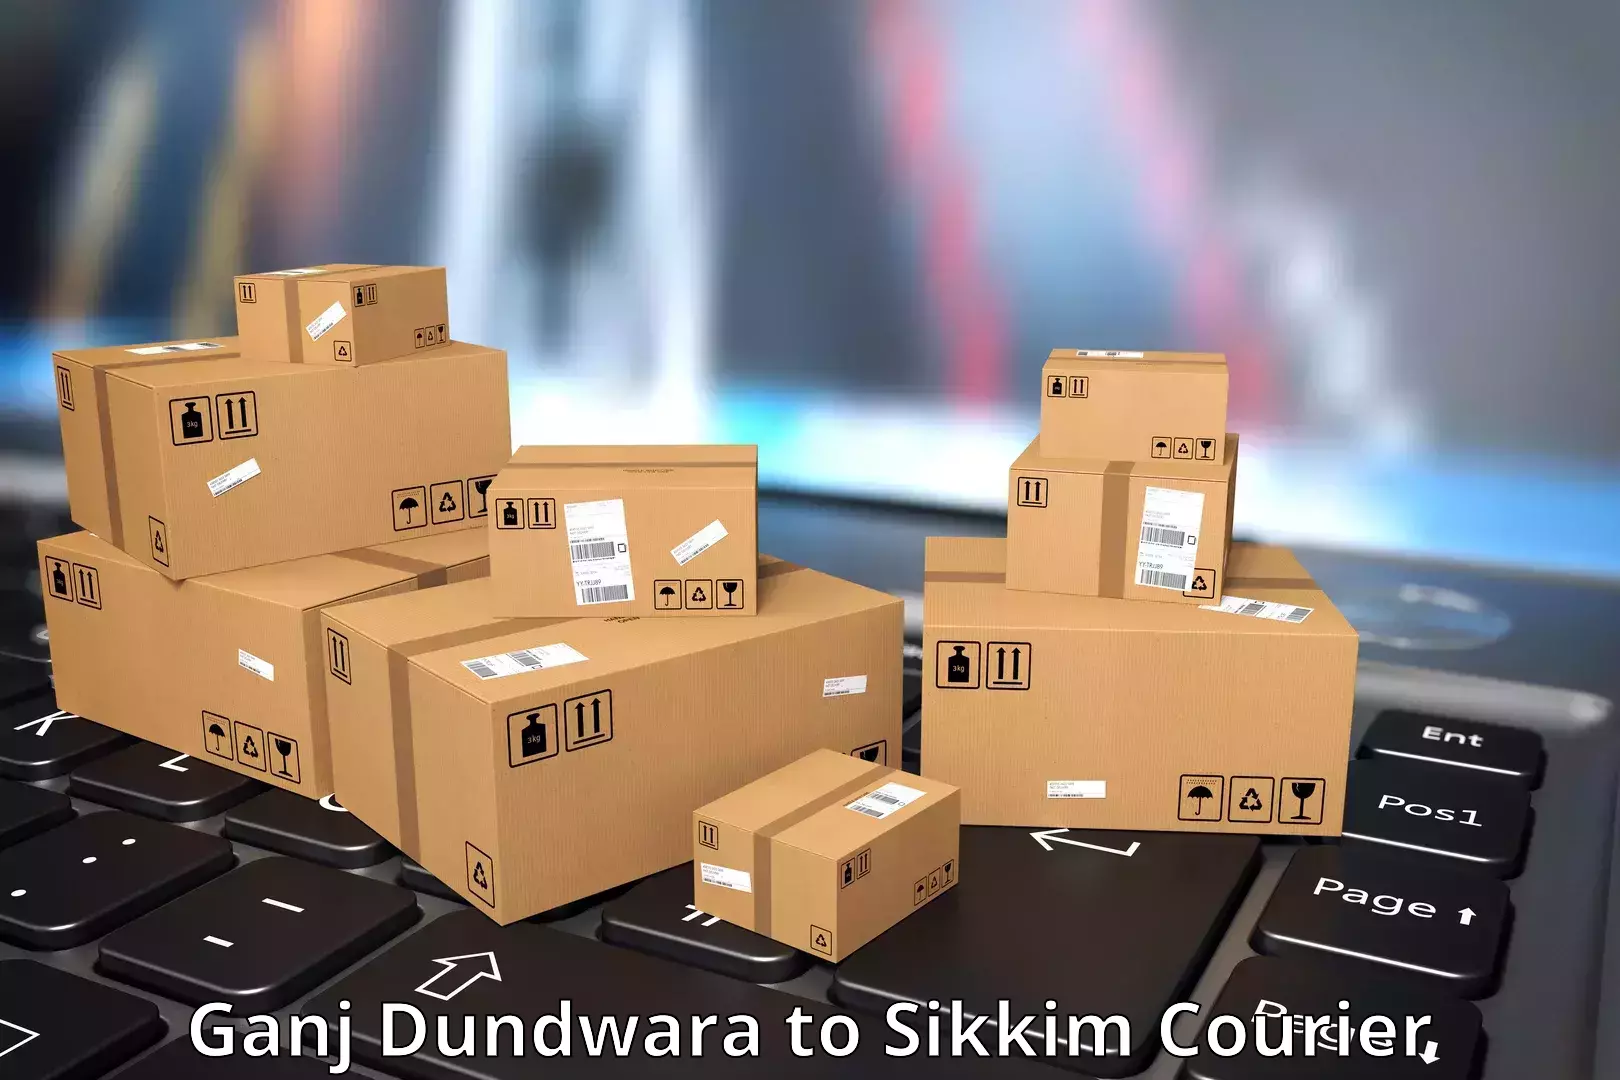 Nationwide shipping coverage Ganj Dundwara to Pelling